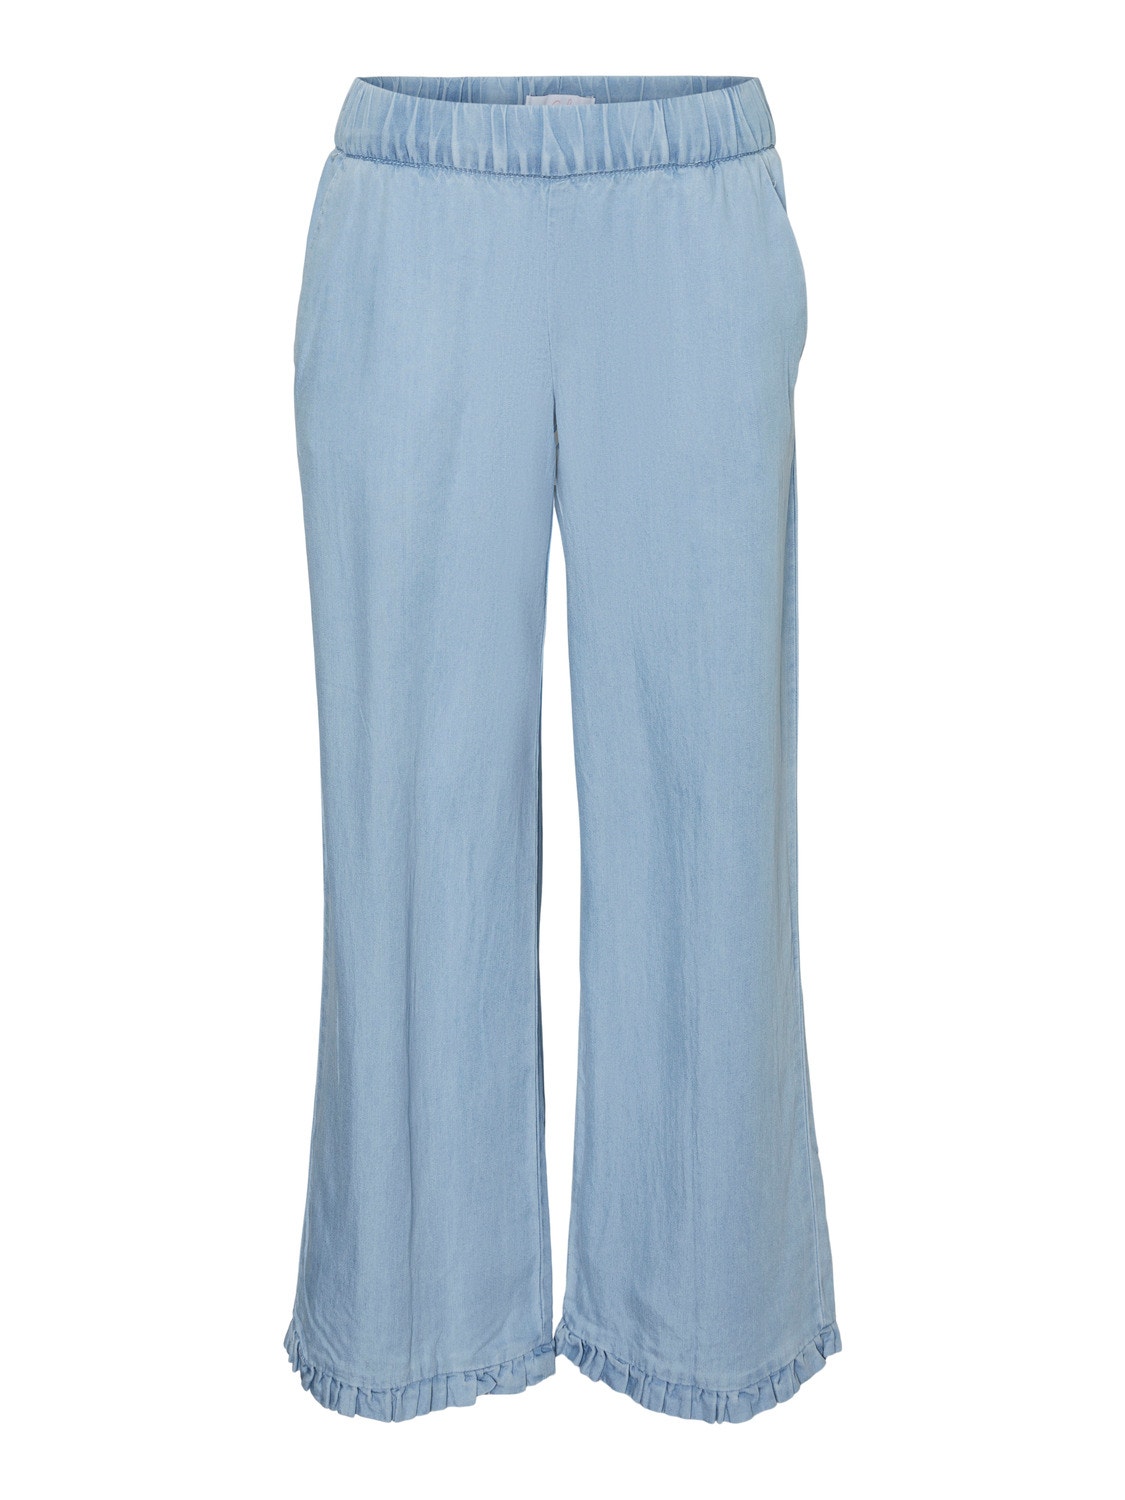 Vero Moda VMHARPER Trousers -Light Blue Denim - 10283853